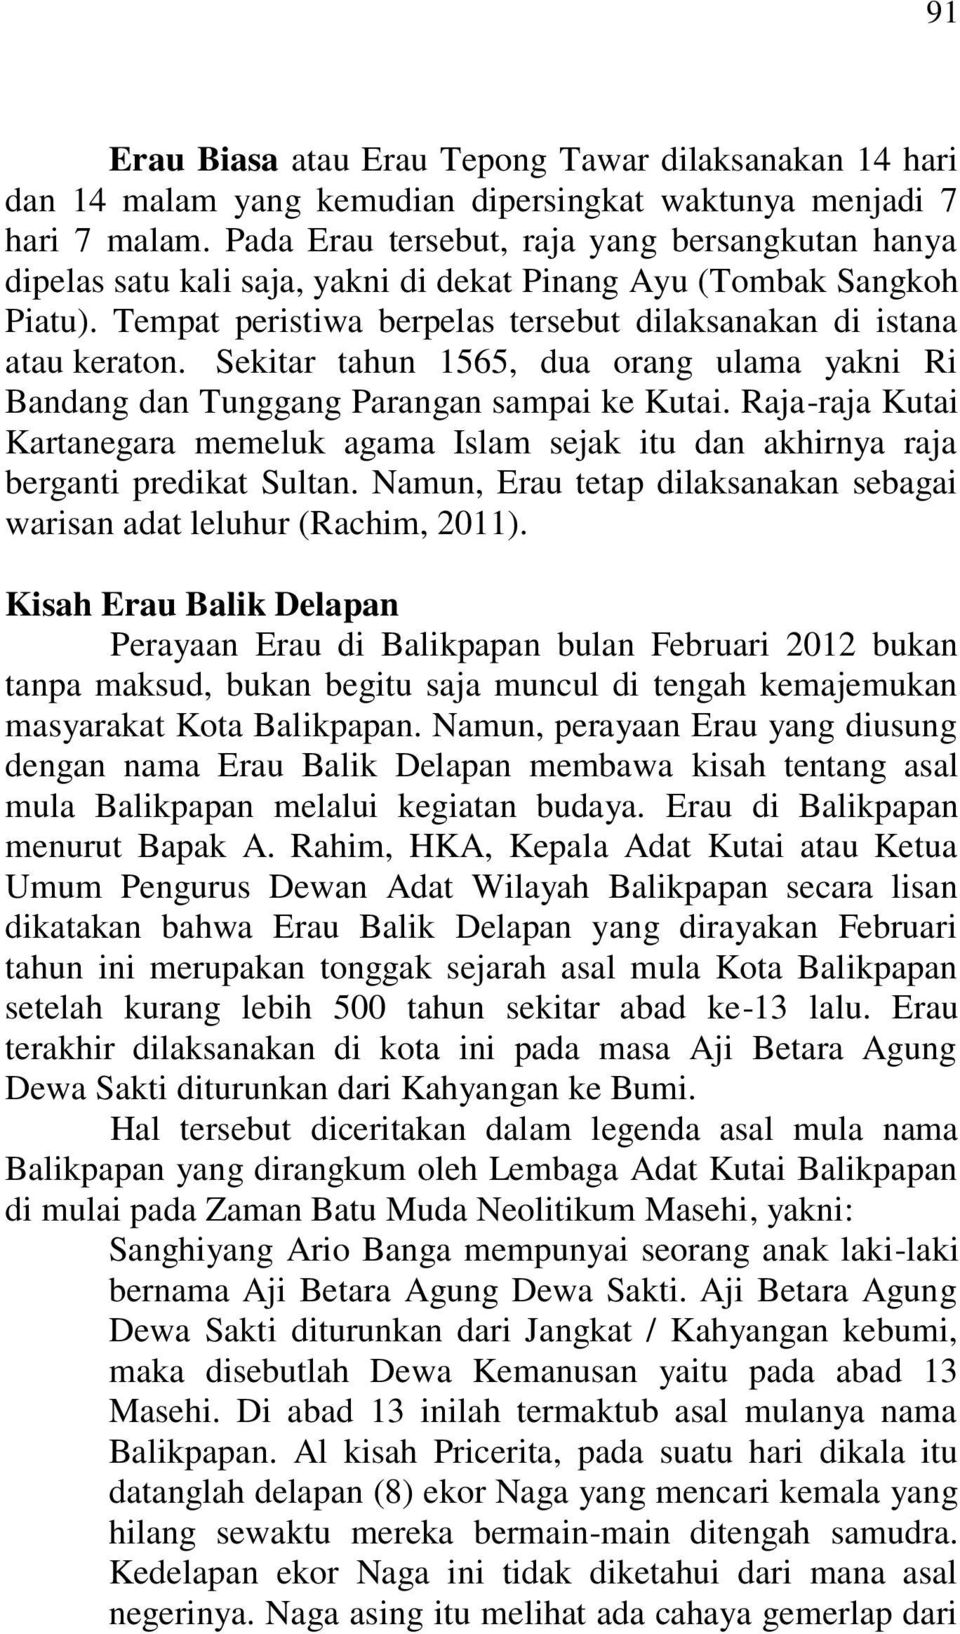 Sekitar tahun 1565, dua orang ulama yakni Ri Bandang dan Tunggang Parangan sampai ke Kutai. Raja-raja Kutai Kartanegara memeluk agama Islam sejak itu dan akhirnya raja berganti predikat Sultan.